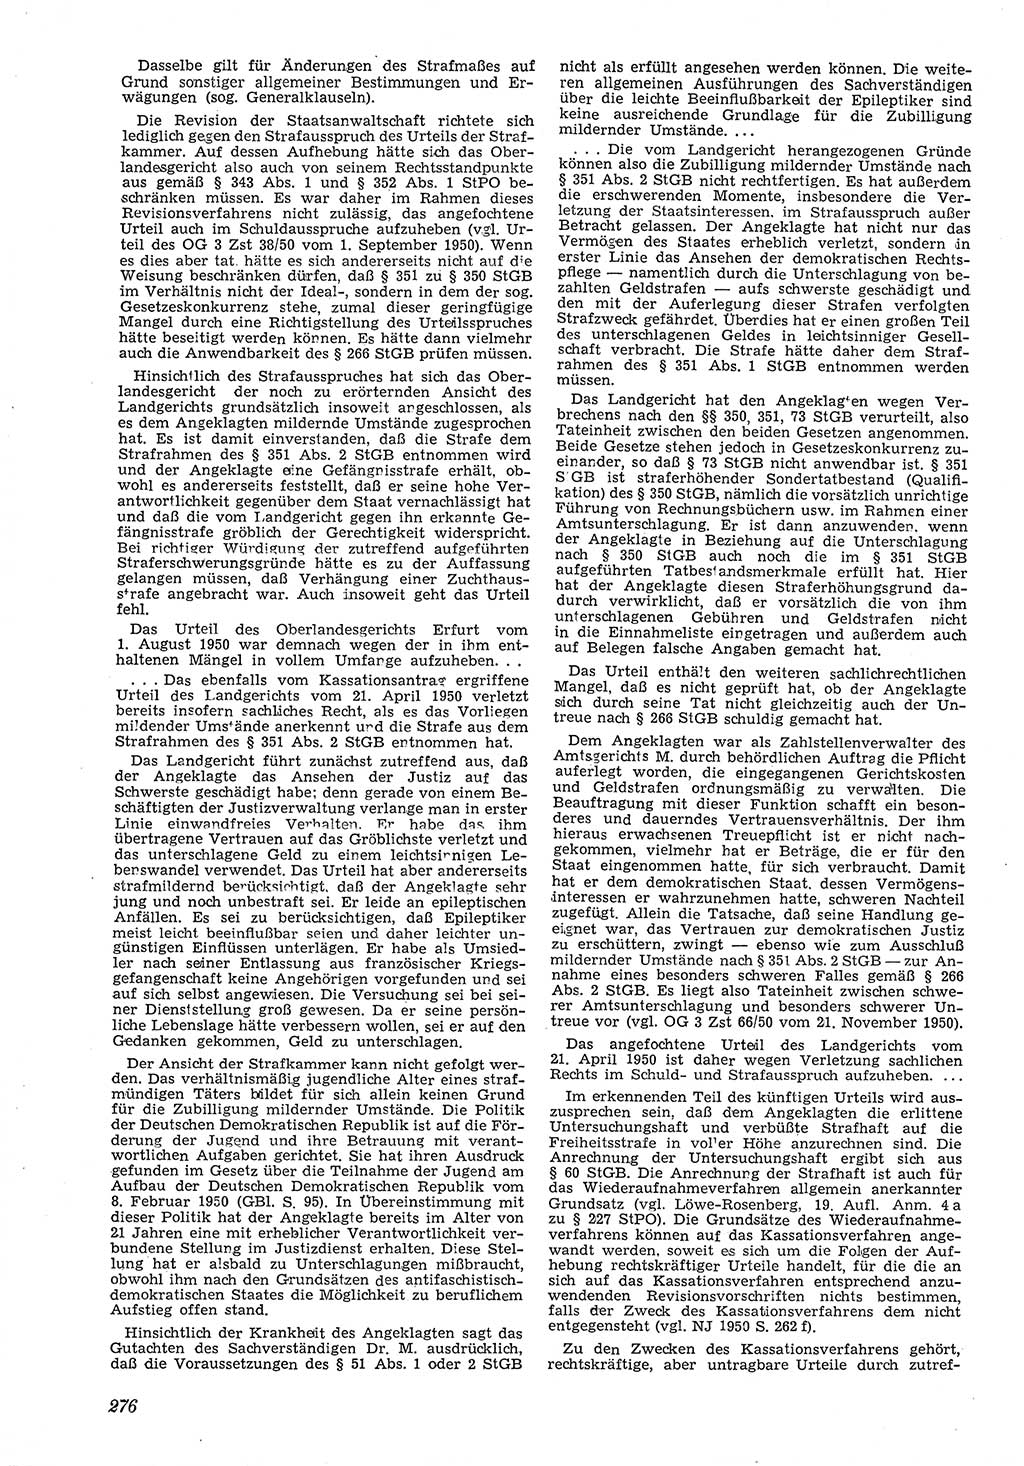 Neue Justiz (NJ), Zeitschrift für Recht und Rechtswissenschaft [Deutsche Demokratische Republik (DDR)], 5. Jahrgang 1951, Seite 276 (NJ DDR 1951, S. 276)